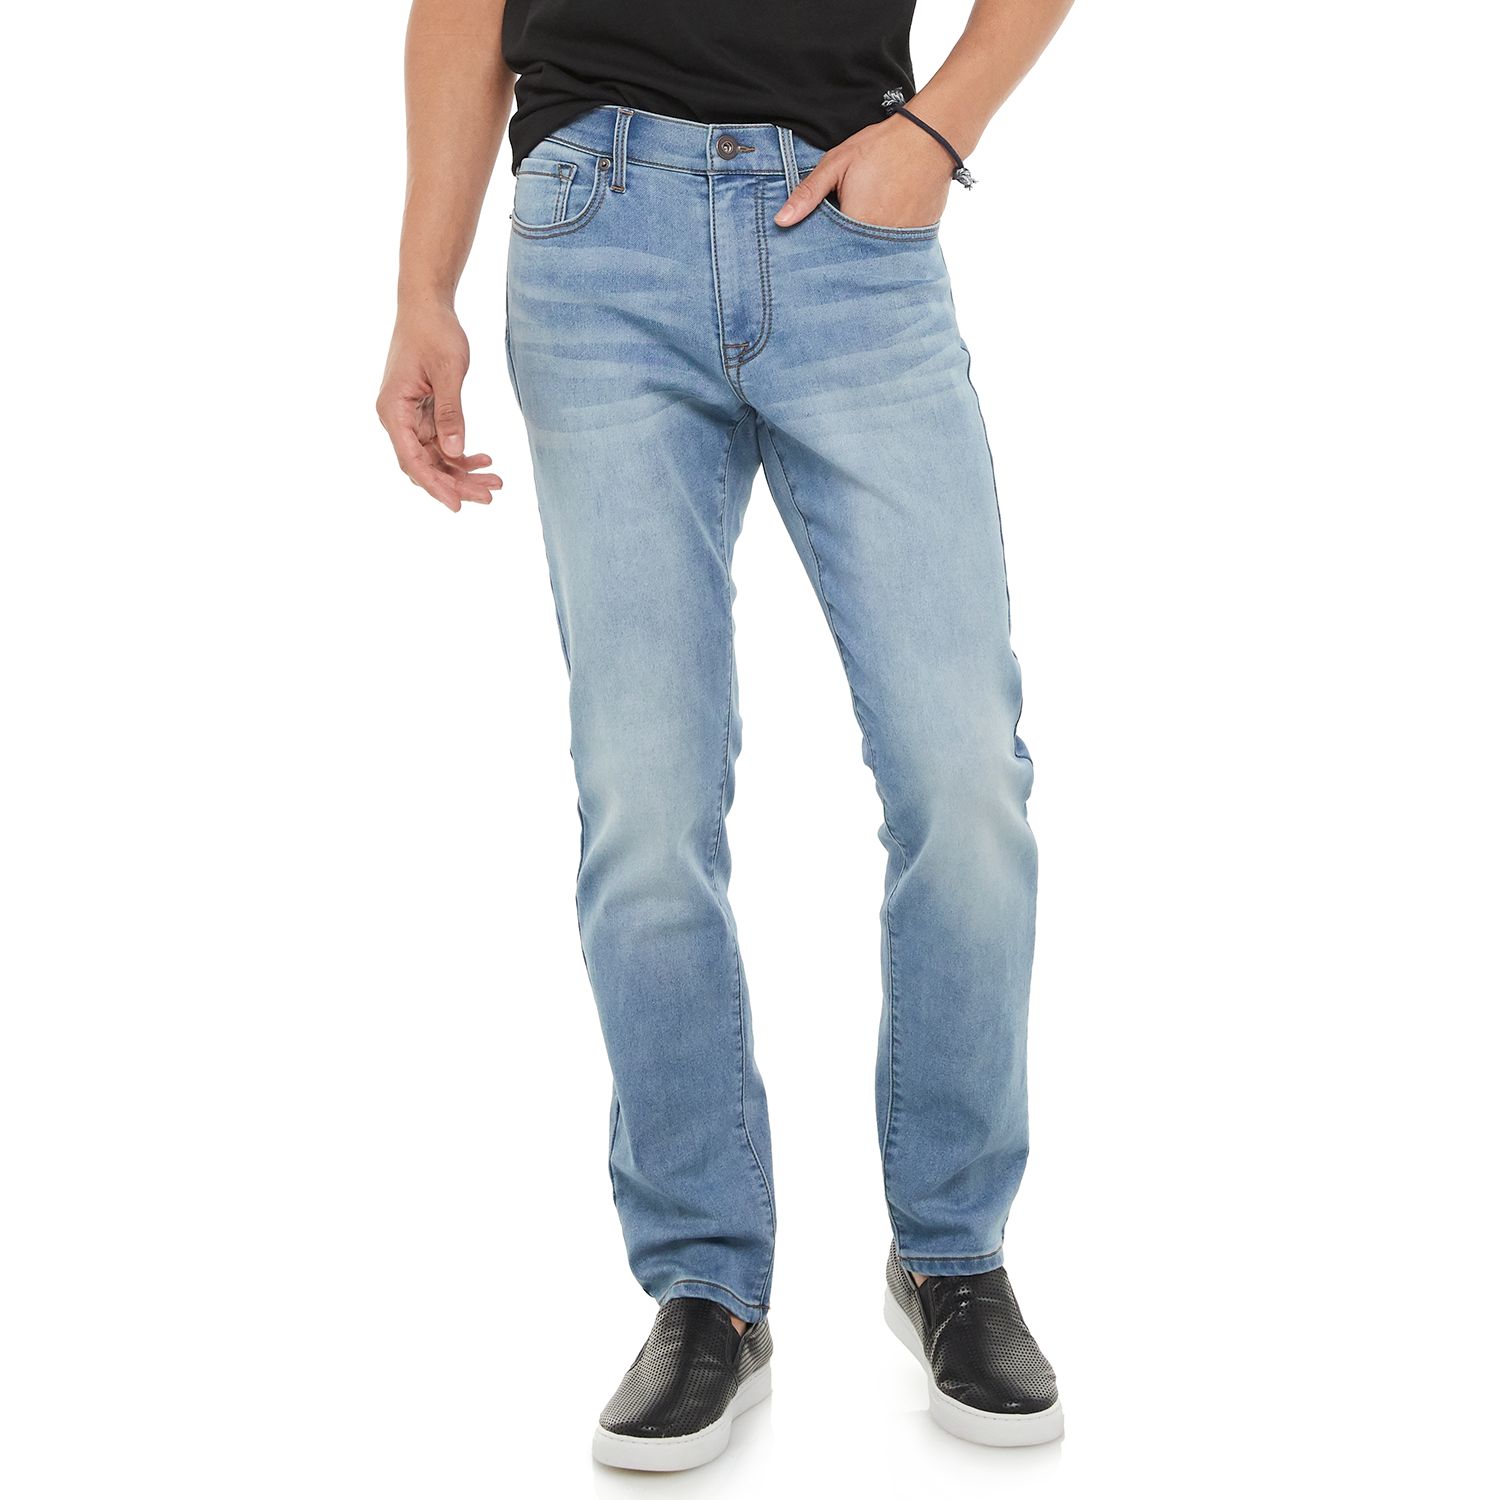 kohl's denim jeans